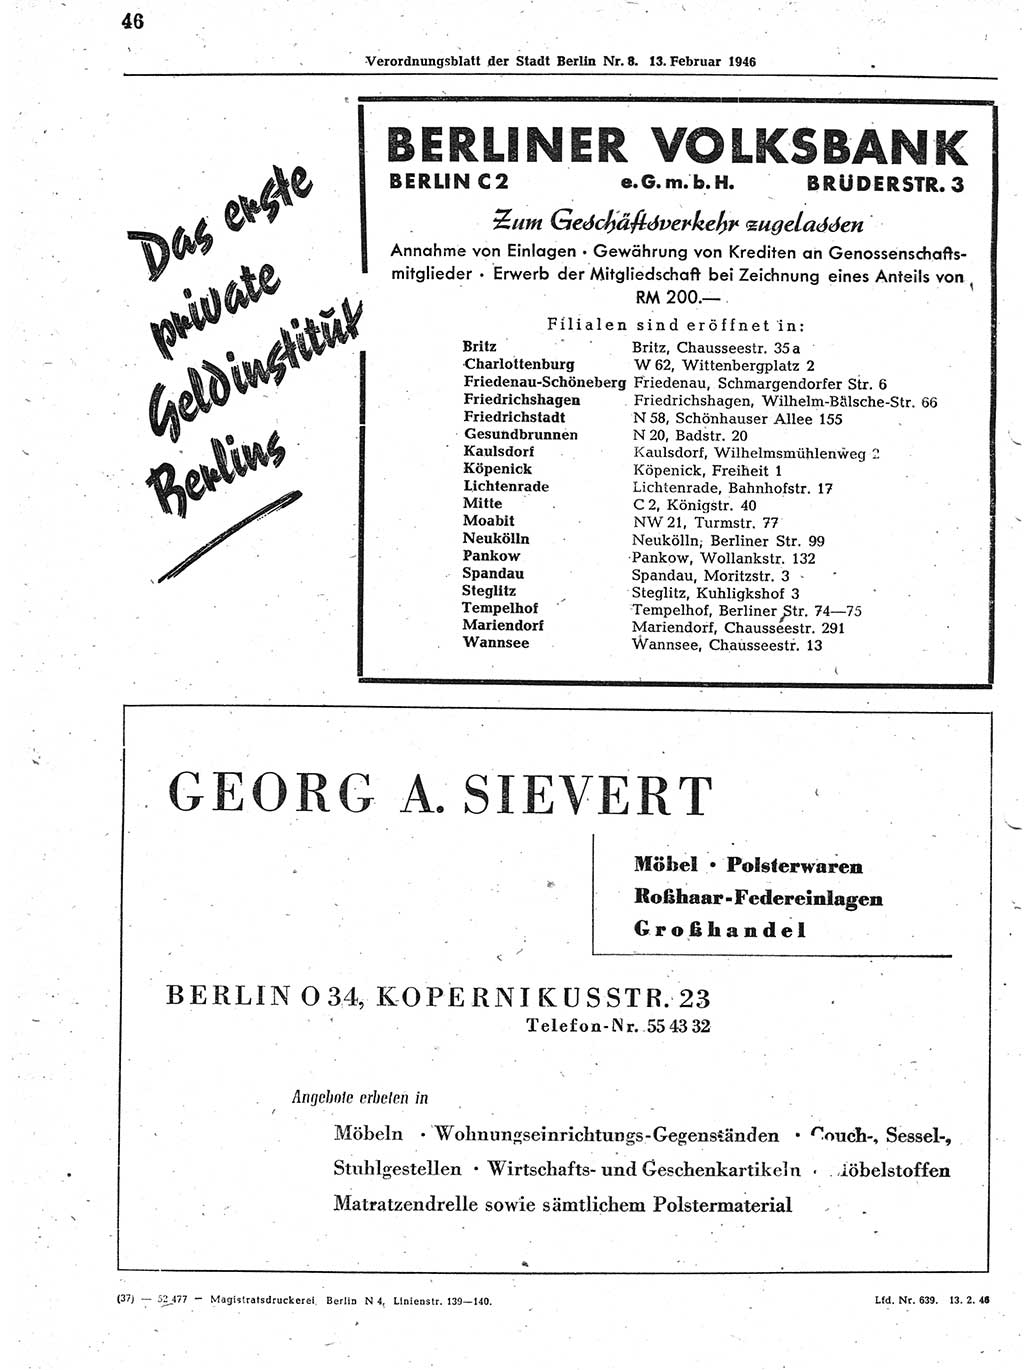 Verordnungsblatt (VOBl.) der Stadt Berlin, für Groß-Berlin 1946, Seite 46 (VOBl. Bln. 1946, S. 46)